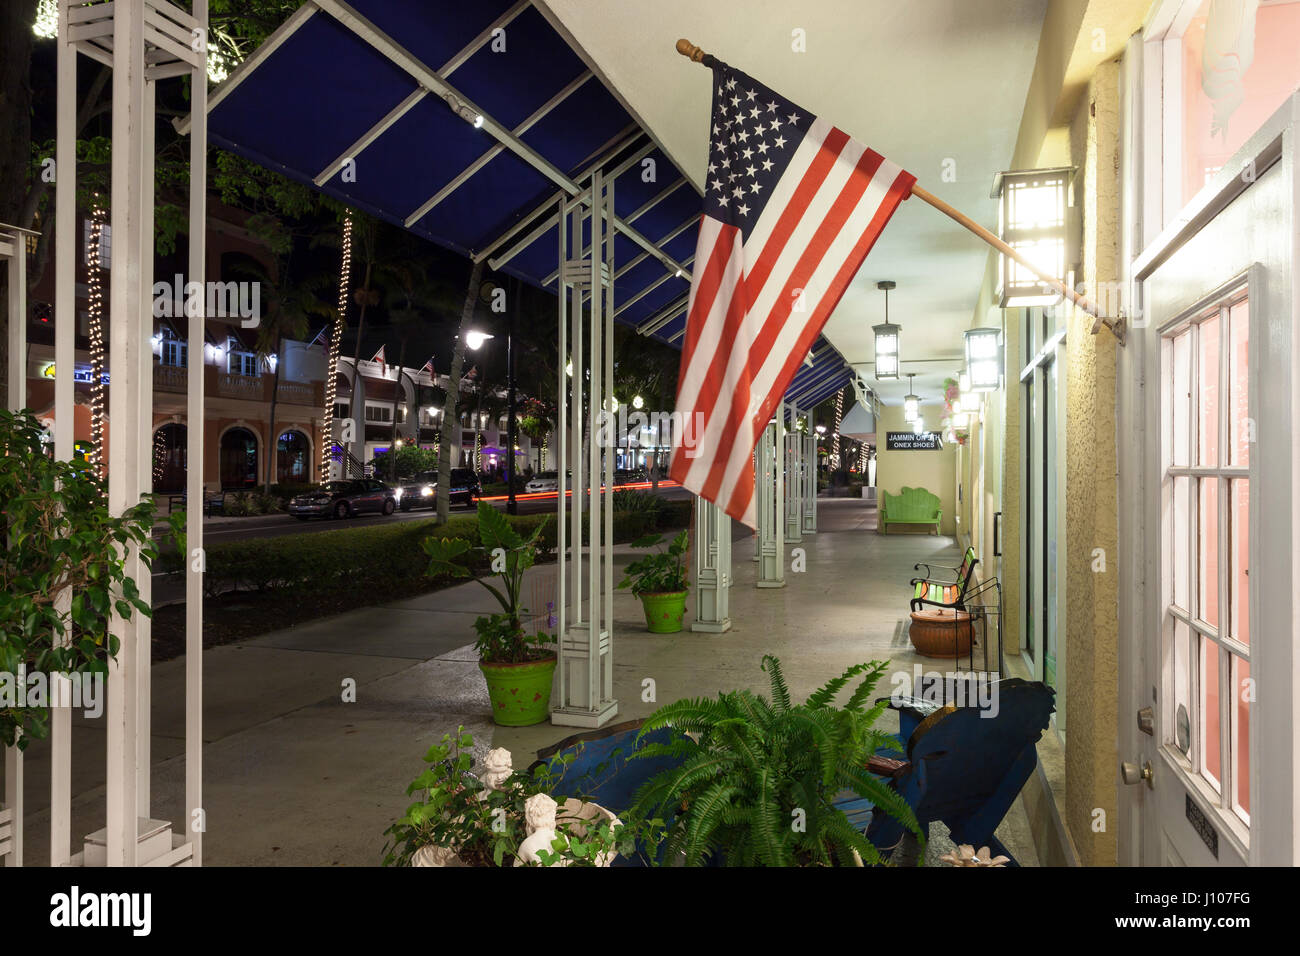 Naples, Fl, USA - 21. März 2017: Nationale Flagge der Vereinigten Staaten in das Schaufenster eines Ladens in Naples Innenstadt. Florida, United Stat Stockfoto